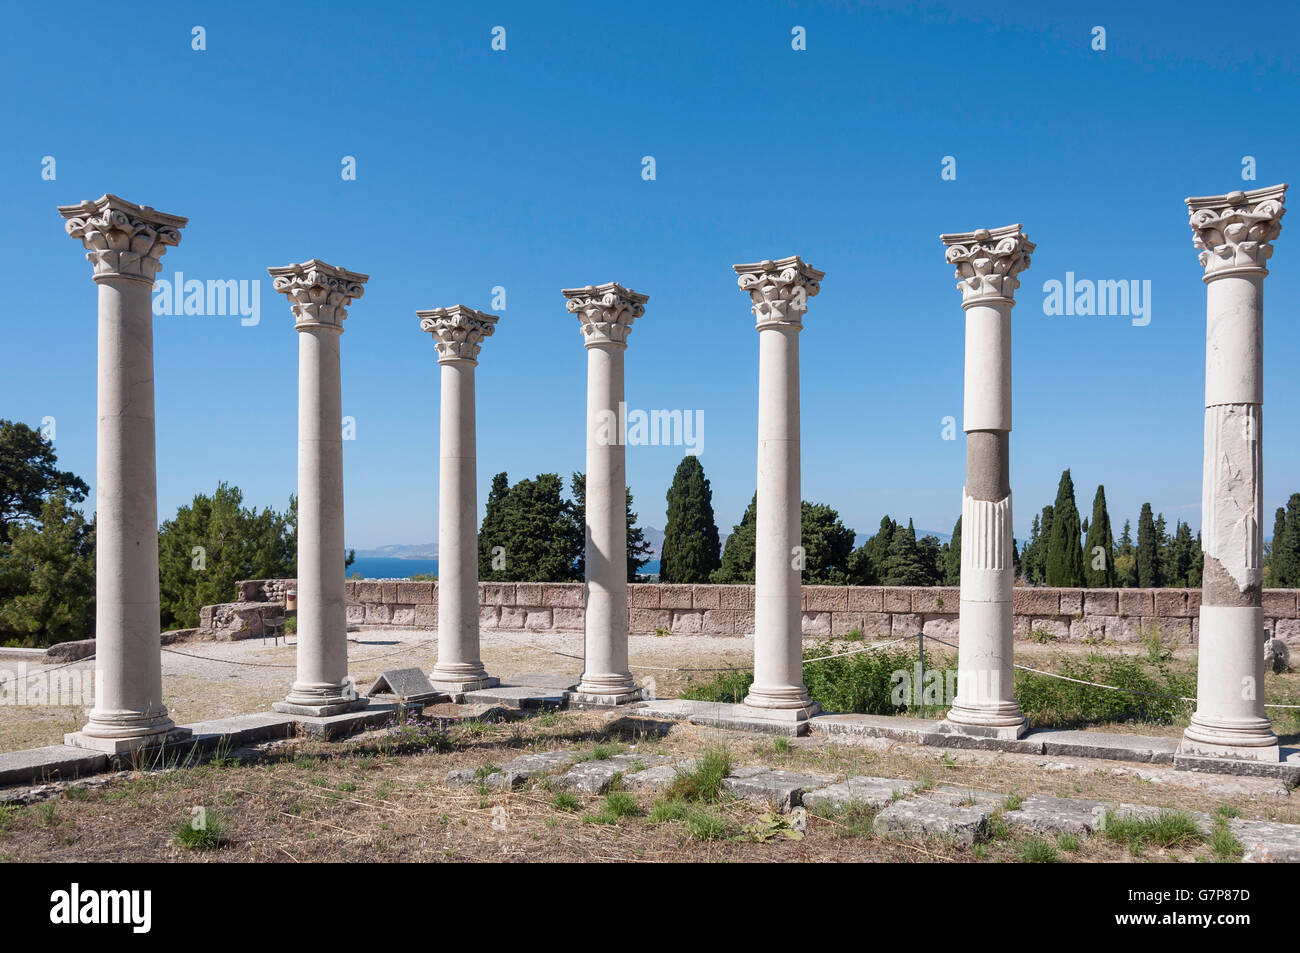 Colonnes corinthiennes sur la terrasse médiane de l'Asklepieion, Platani, Kos (Cos), du Dodécanèse, Grèce, région sud de la Mer Egée Banque D'Images